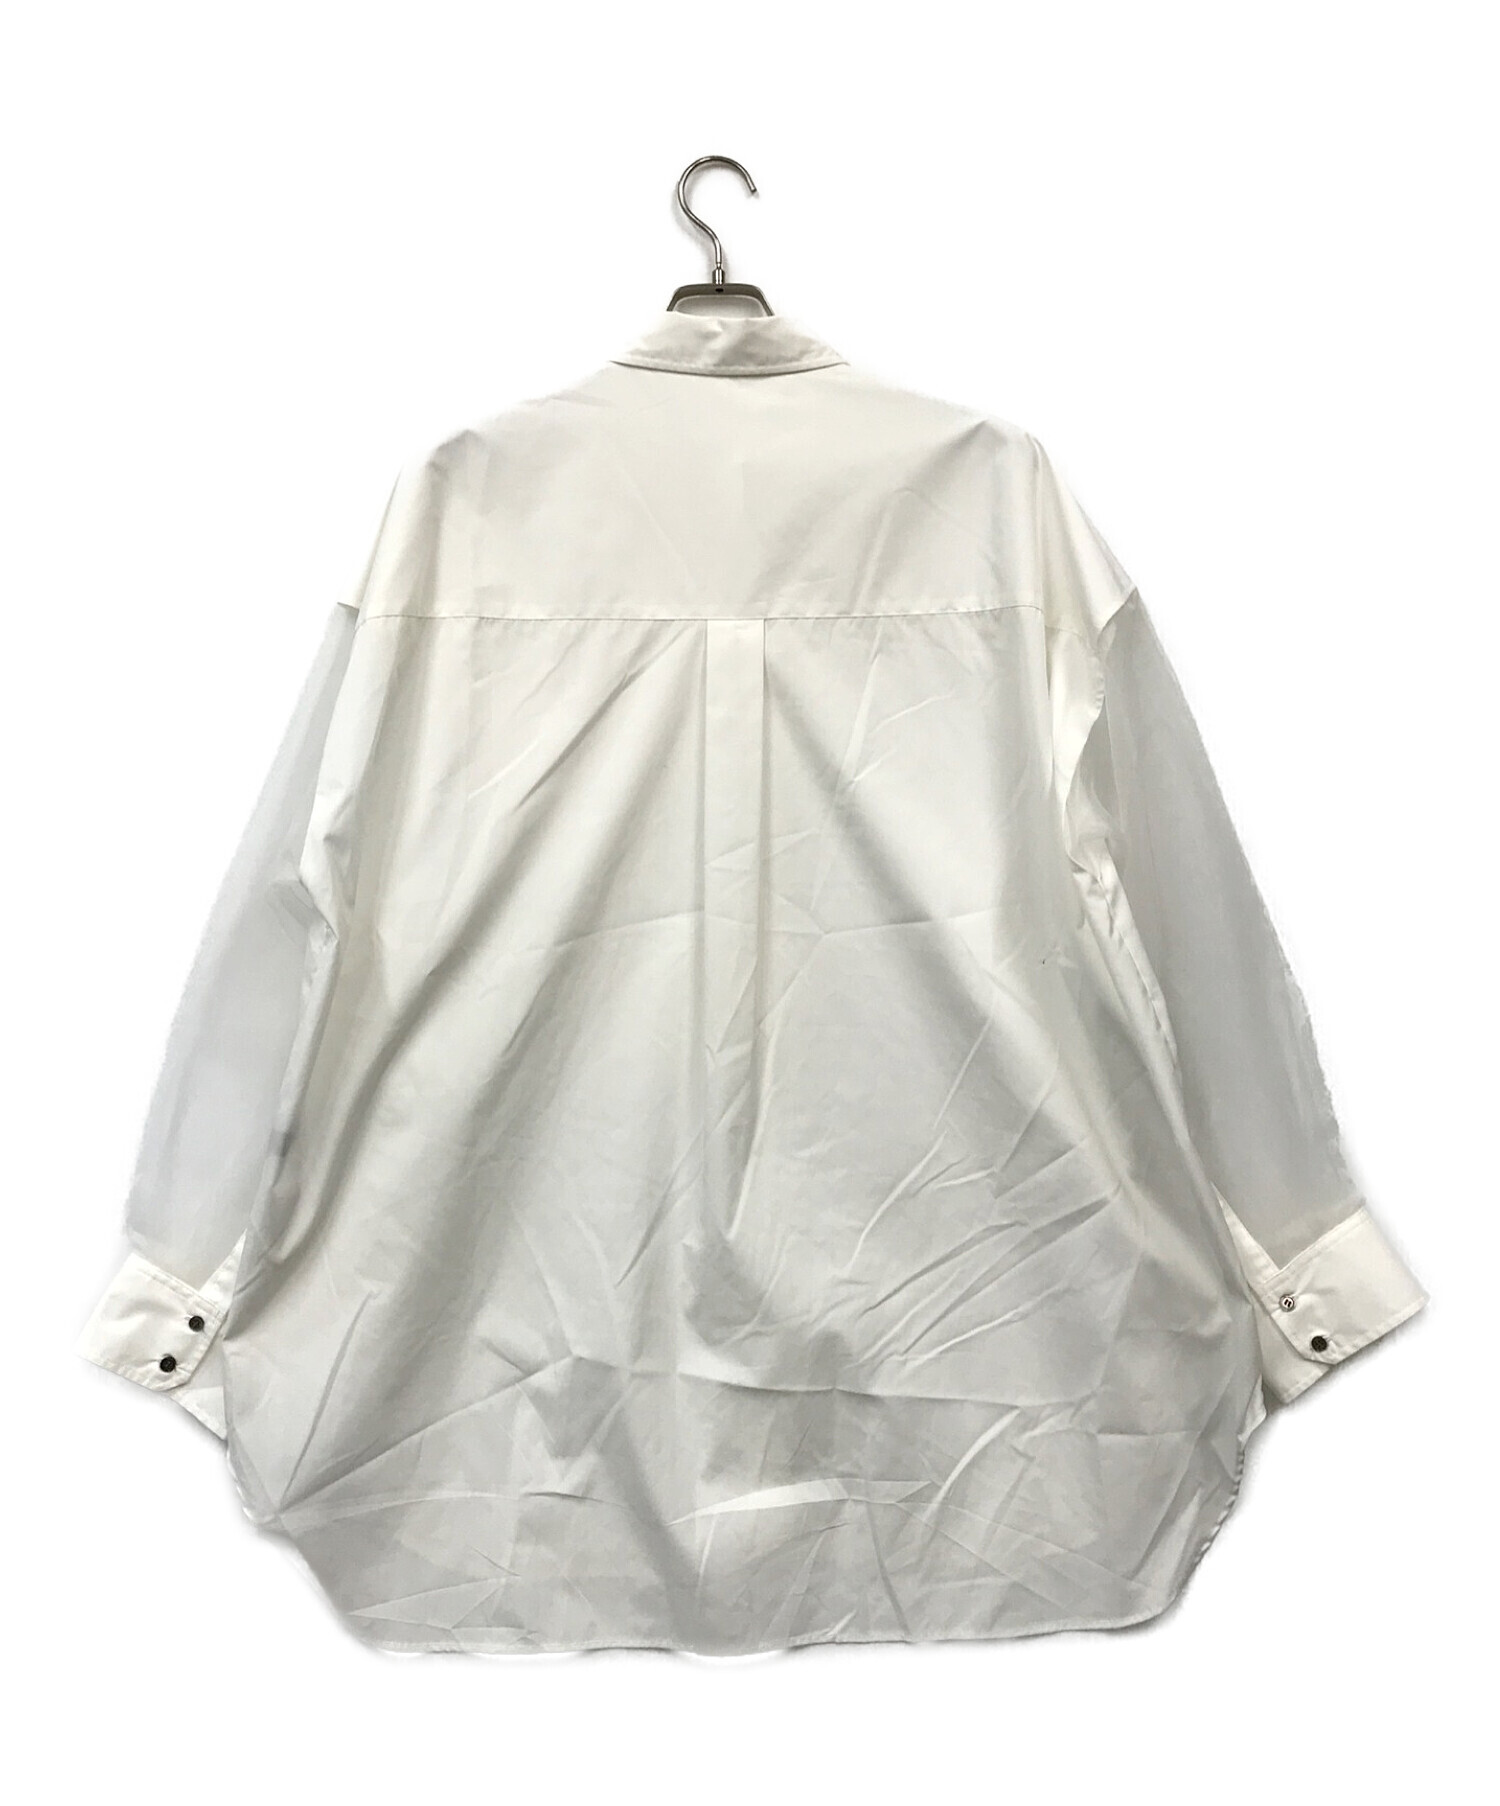 MAISON SPECIAL (メゾンスペシャル) シアースリーブオーバーシャツ ホワイト サイズ:FREE